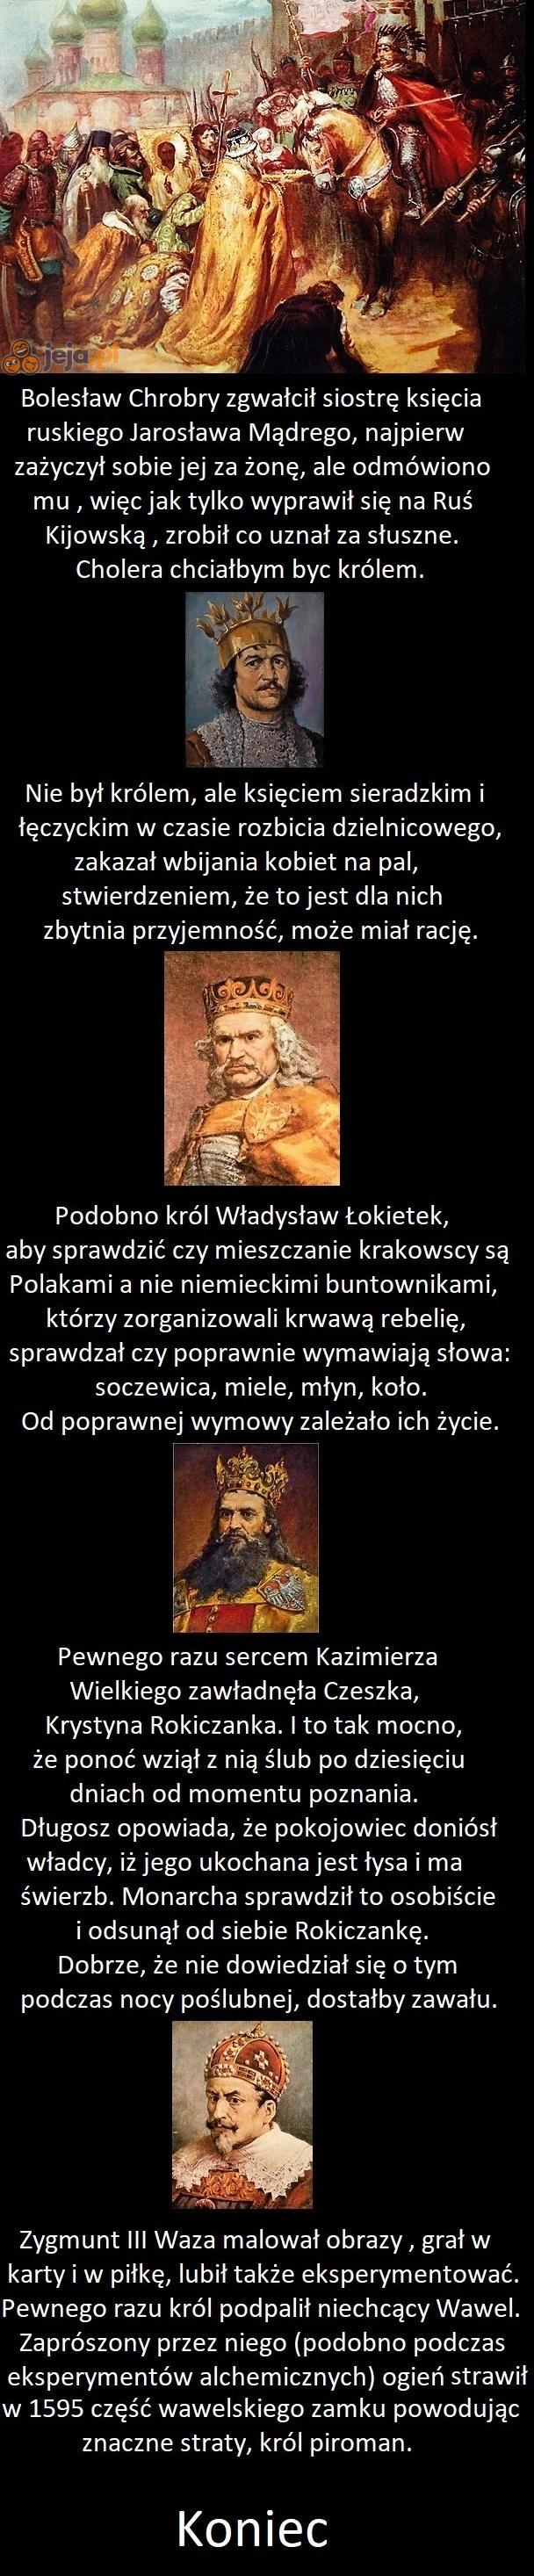 Kolejne ciekawostki o władcach i królach polskich